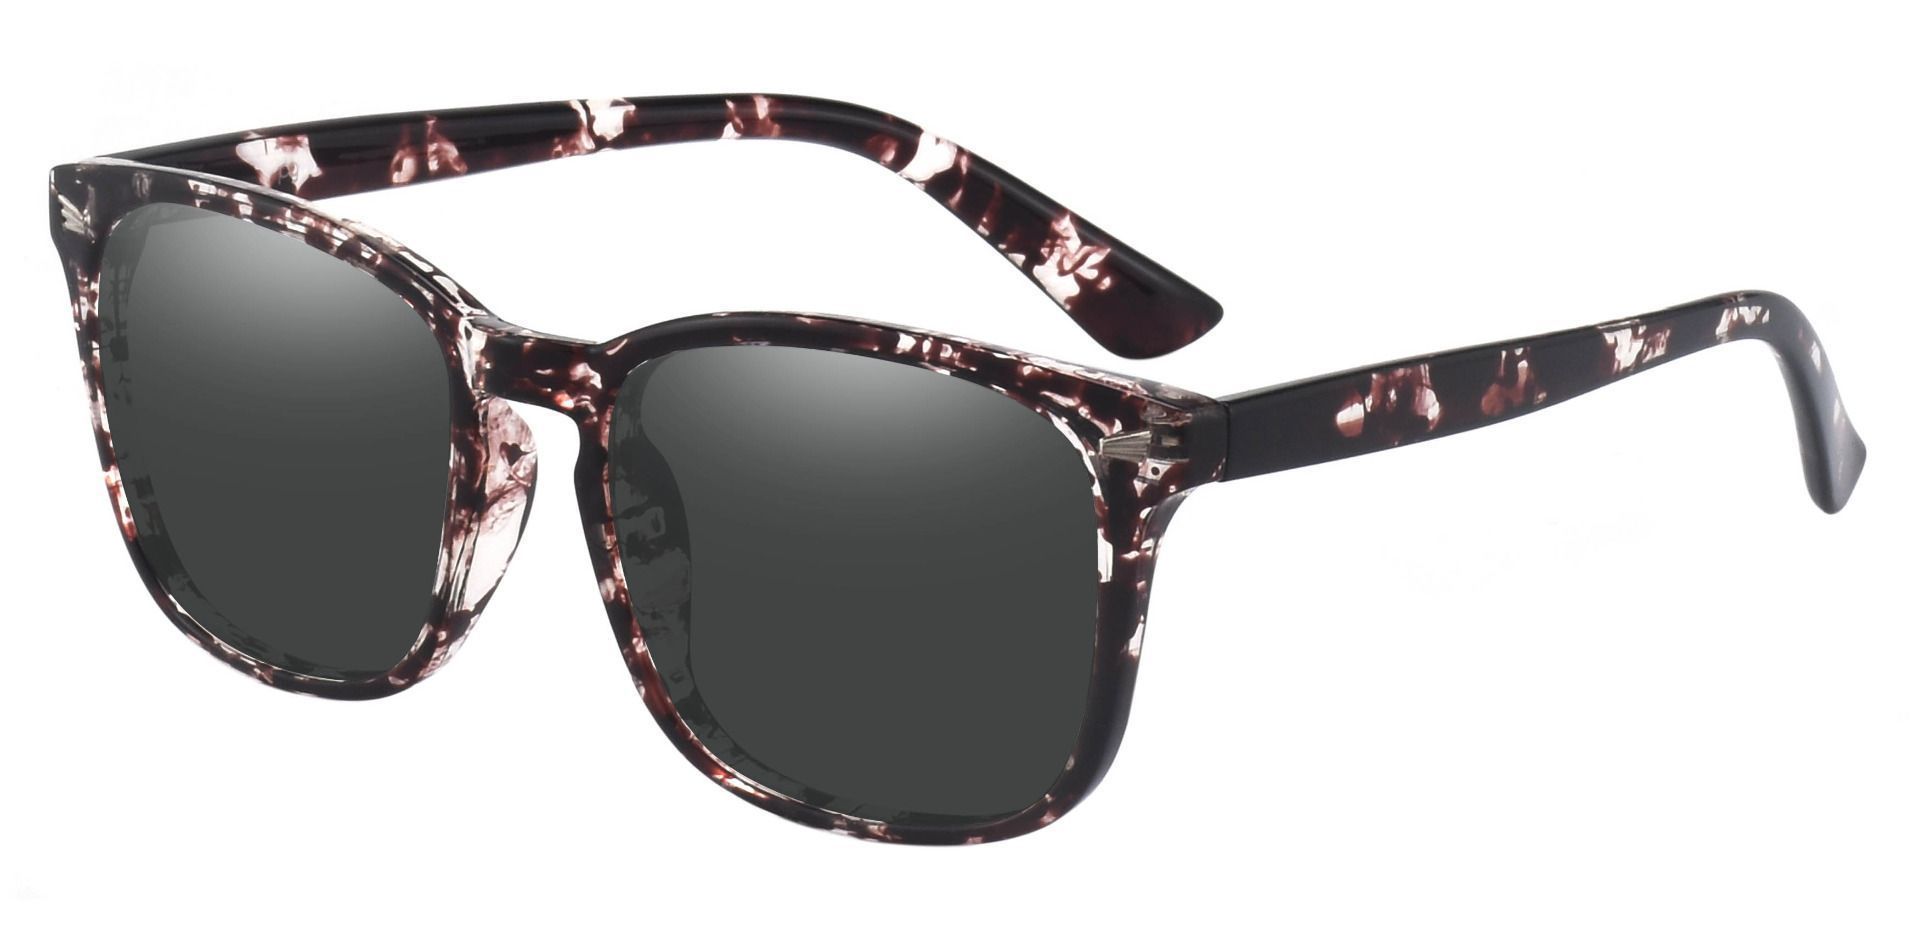 Rogan Square Prescription Sunglasses - Multi Color Frame With Gray Lenses